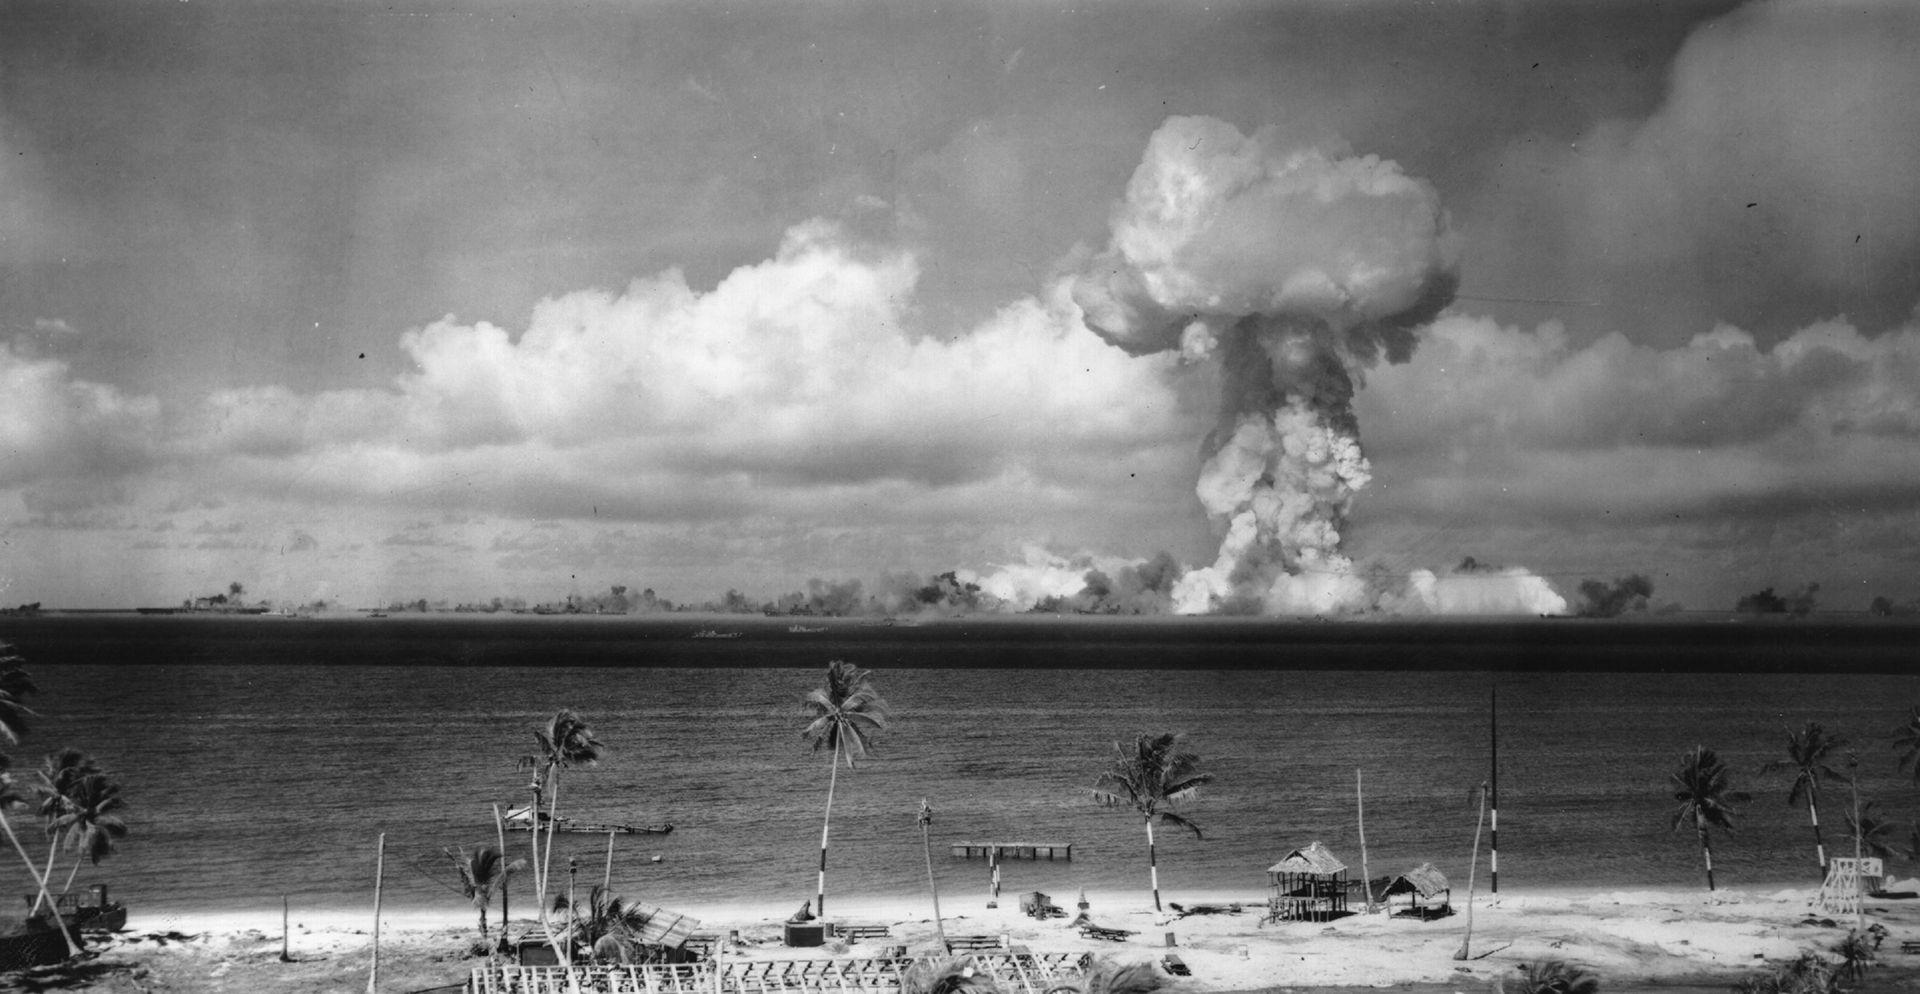 Фотография: gettyimages.ru // Первоначальное взрывное испытание атомной бомбы у берегов атолла Бикини на Маршалловых островах с образованием грибовидного облака (1946 год)